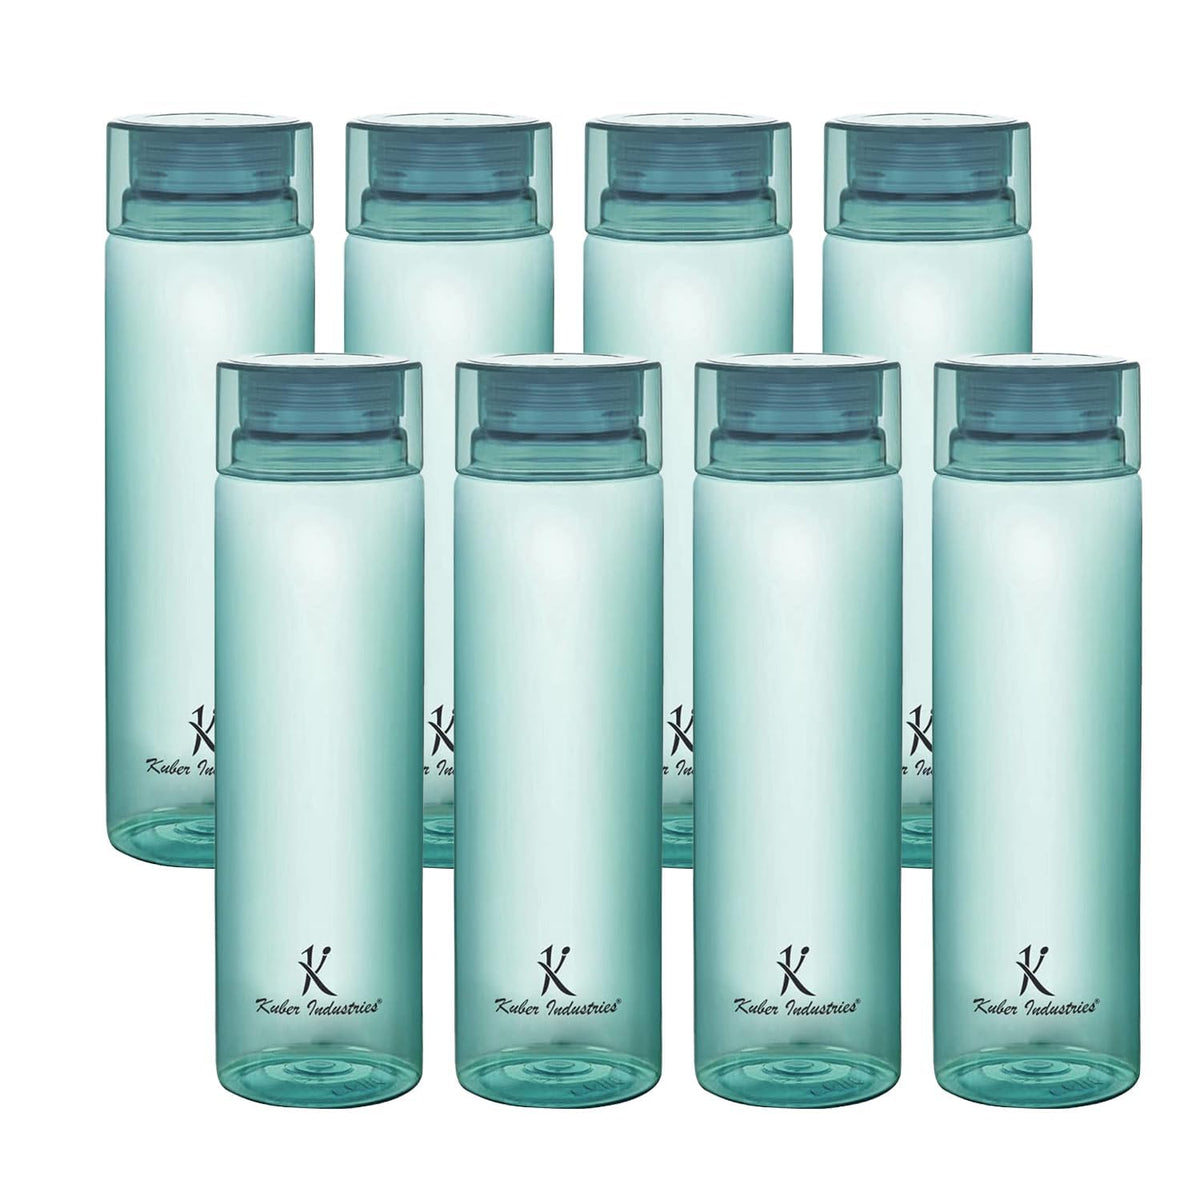 Kuber Industries BPA Free Plastic Water Bottles | Breakproof, Leakproof, Food Grade PET Bottles | Water Bottle for Kids & Adults | Plastic Bottle Set of 4 |Green (Pack of 2)